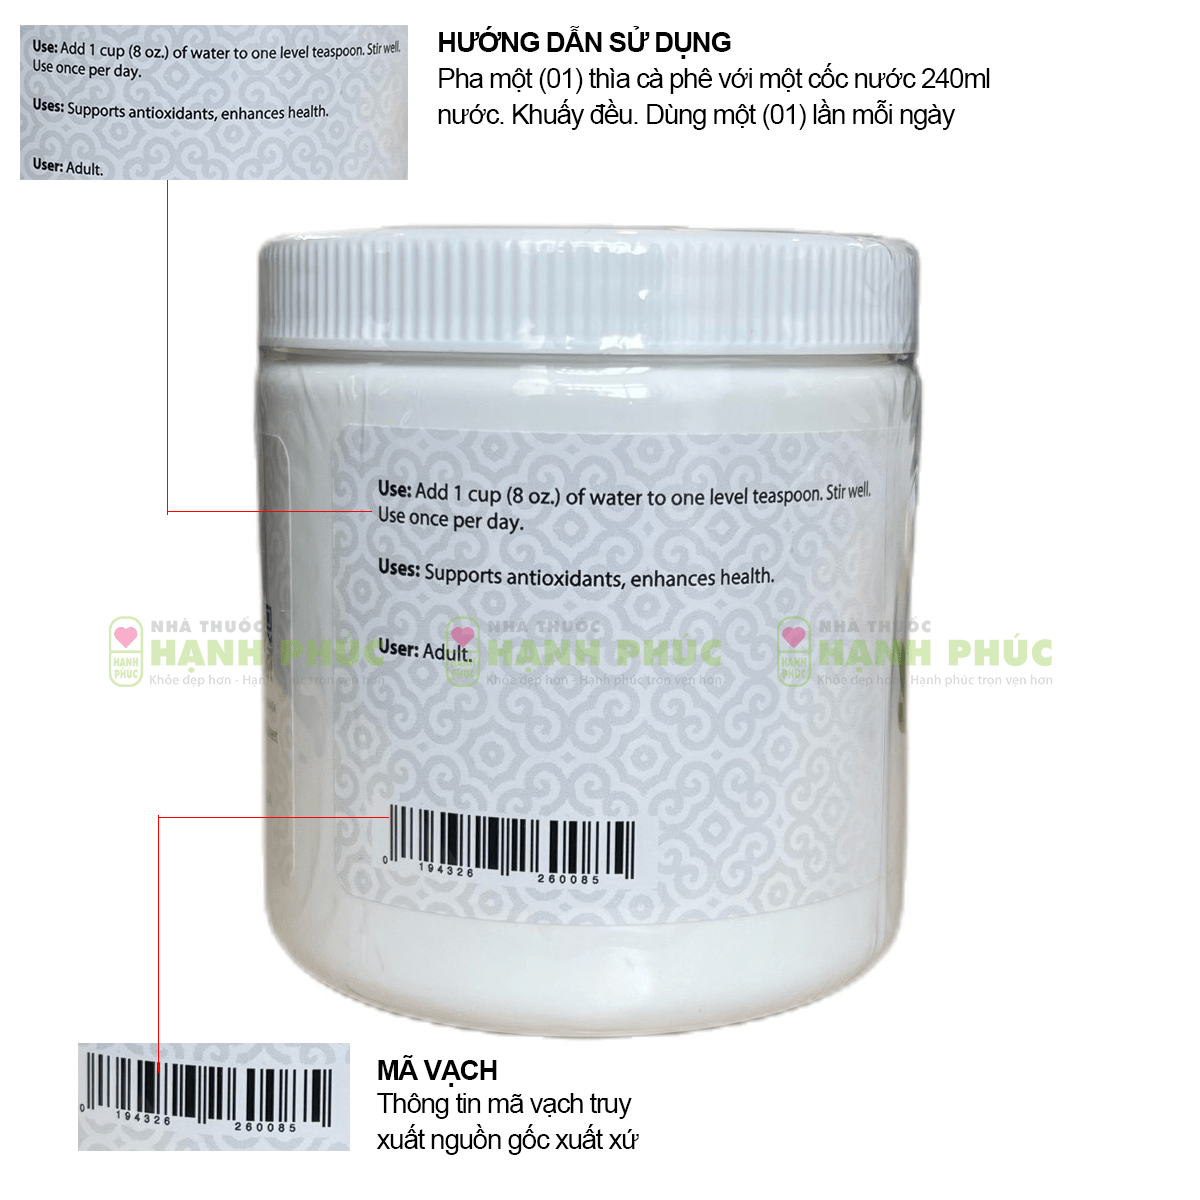 Hướng dẫn dùng và mã vạch in bên trên thân thiết thành phầm bột diệp lục Unicity Super Chlorophyll Powder